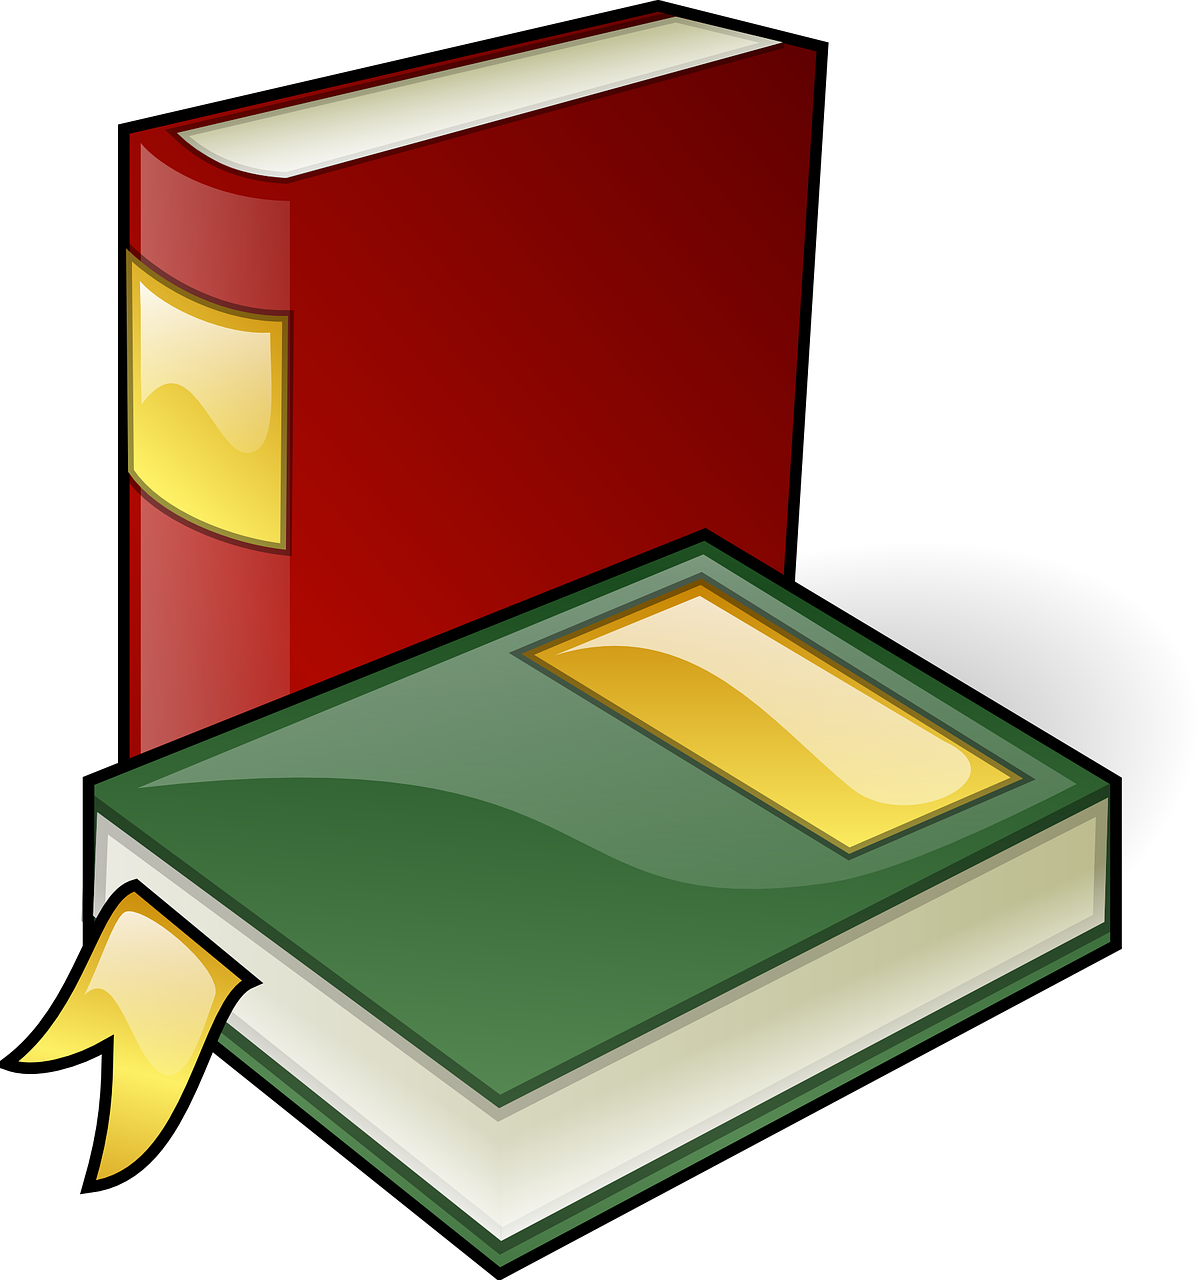 Knygos, Biblioteka, Švietimas, Literatūra, Informacija, Mokykla, Studijuoti, Žinios, Mokytis, Skaityti